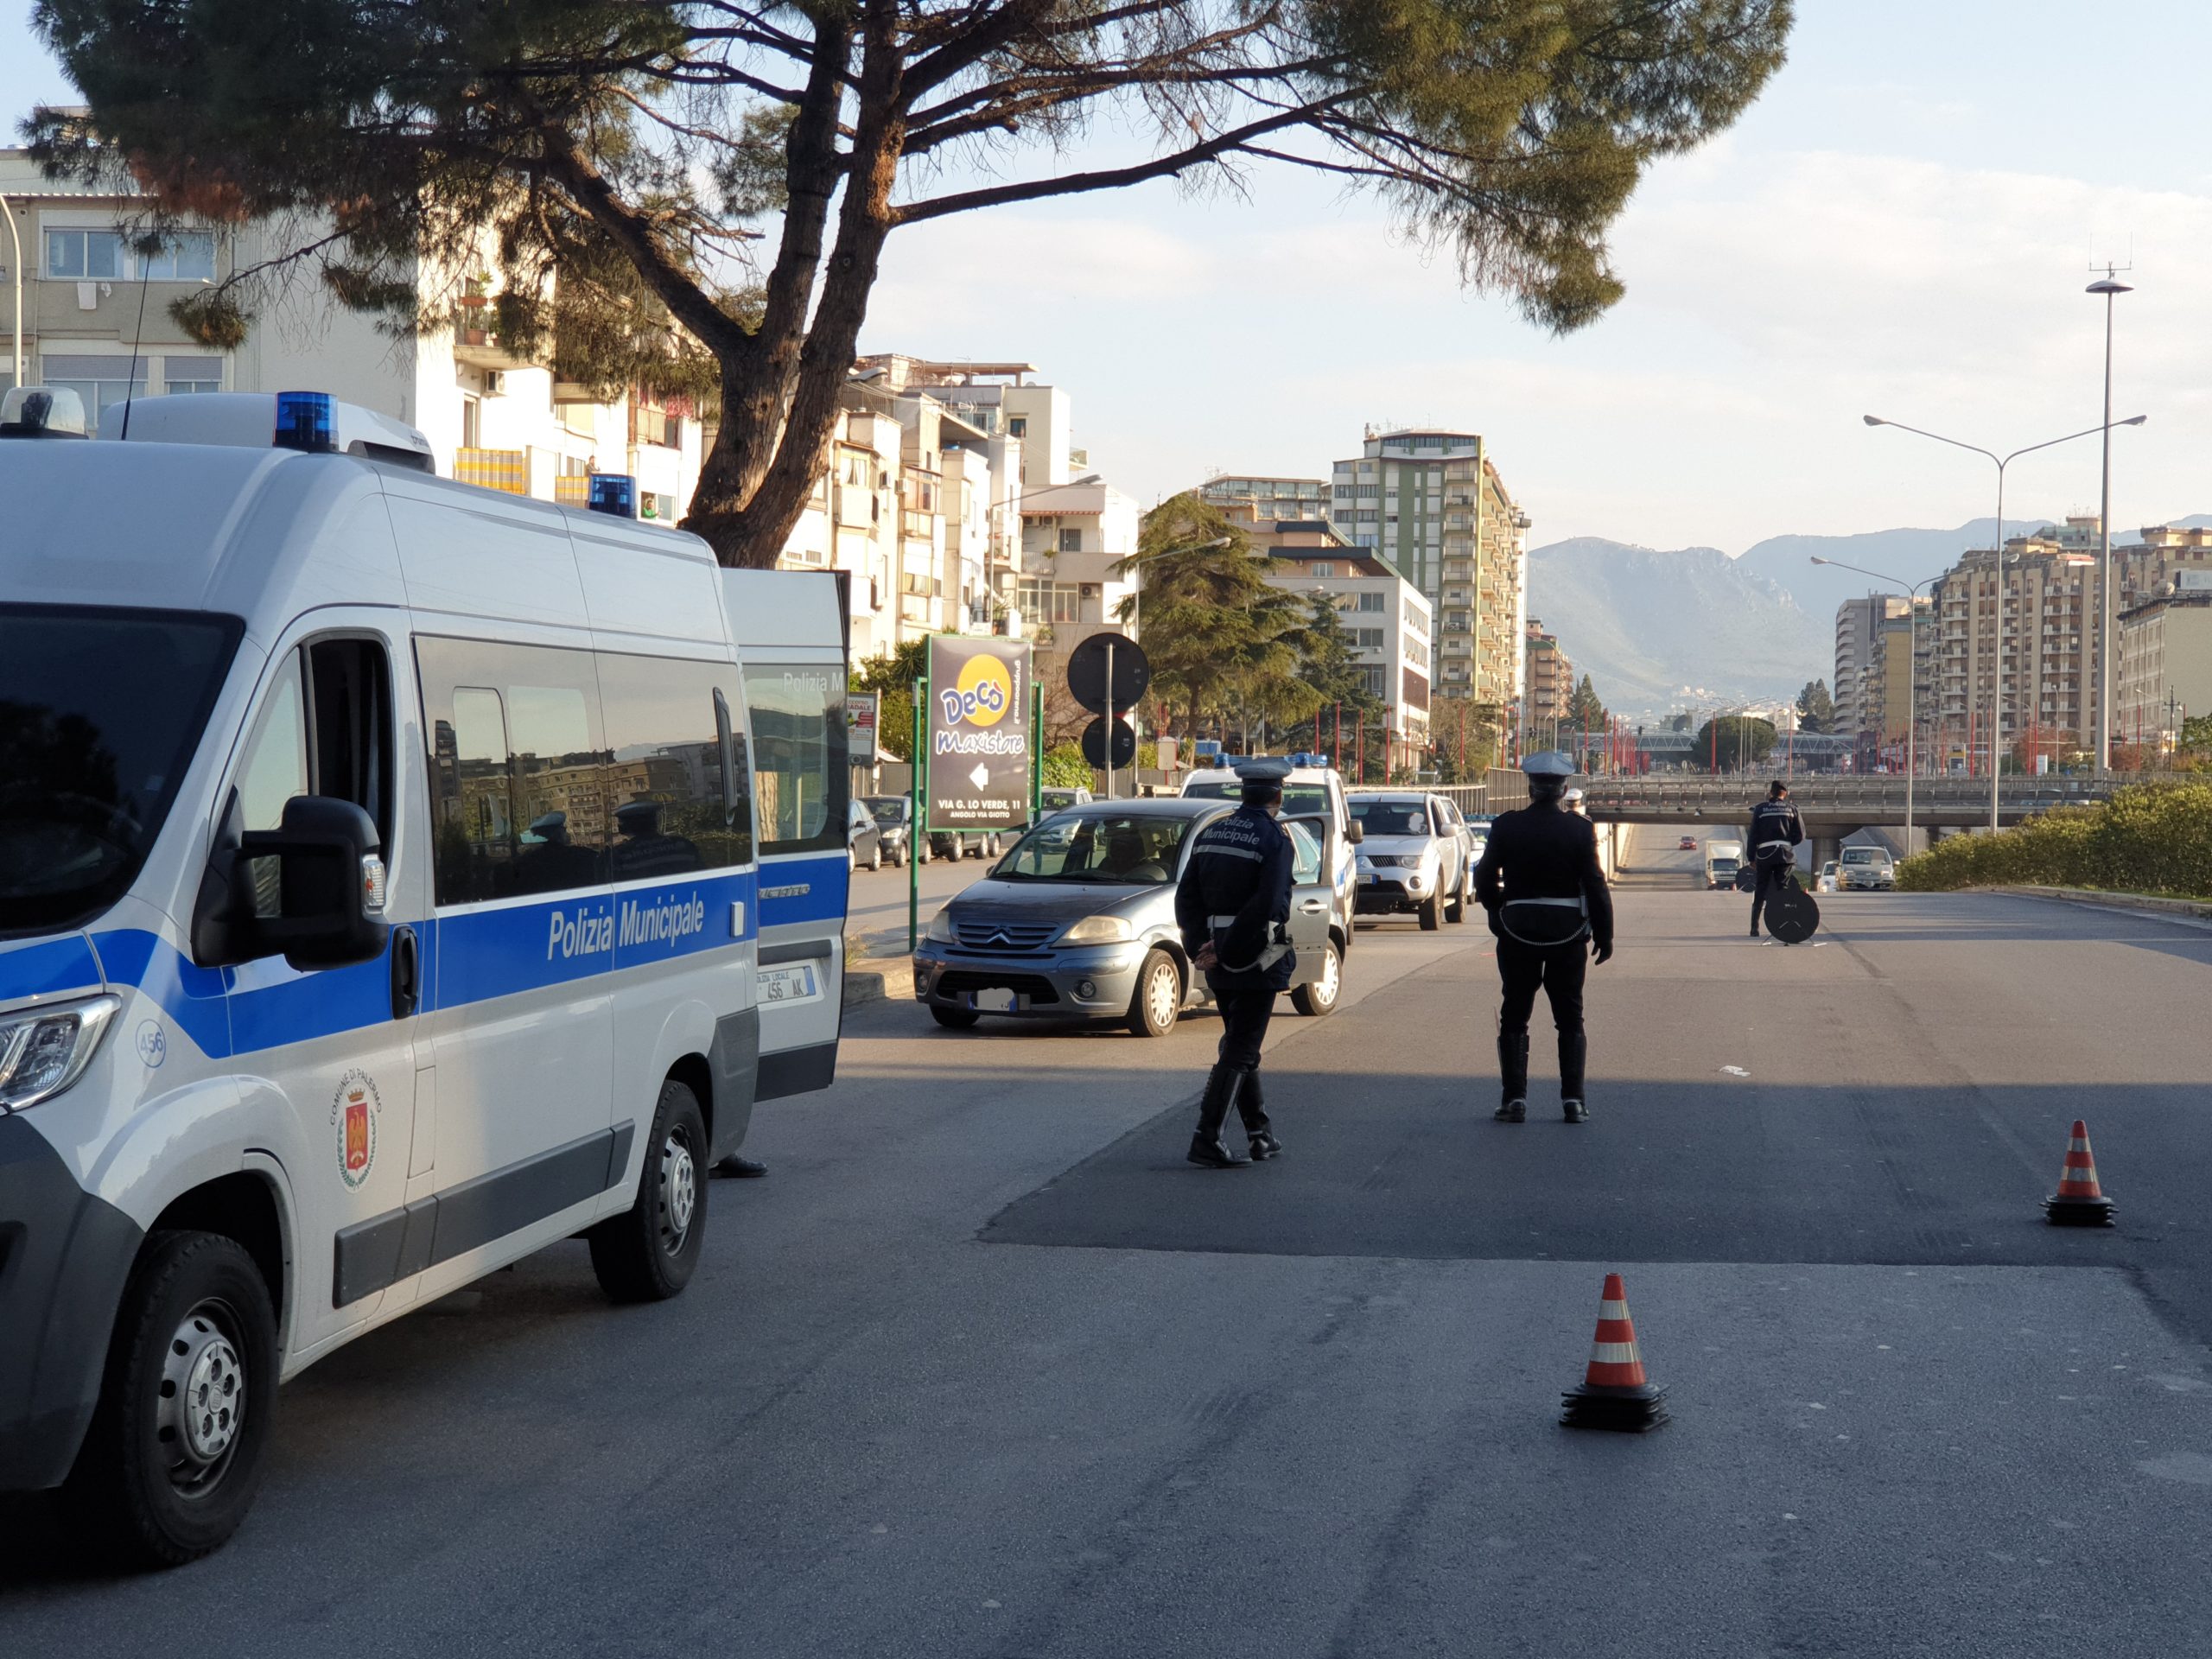 Increscioso furto al banco alimentare di Palermo: rubato furgoncino che consegnava gli alimenti